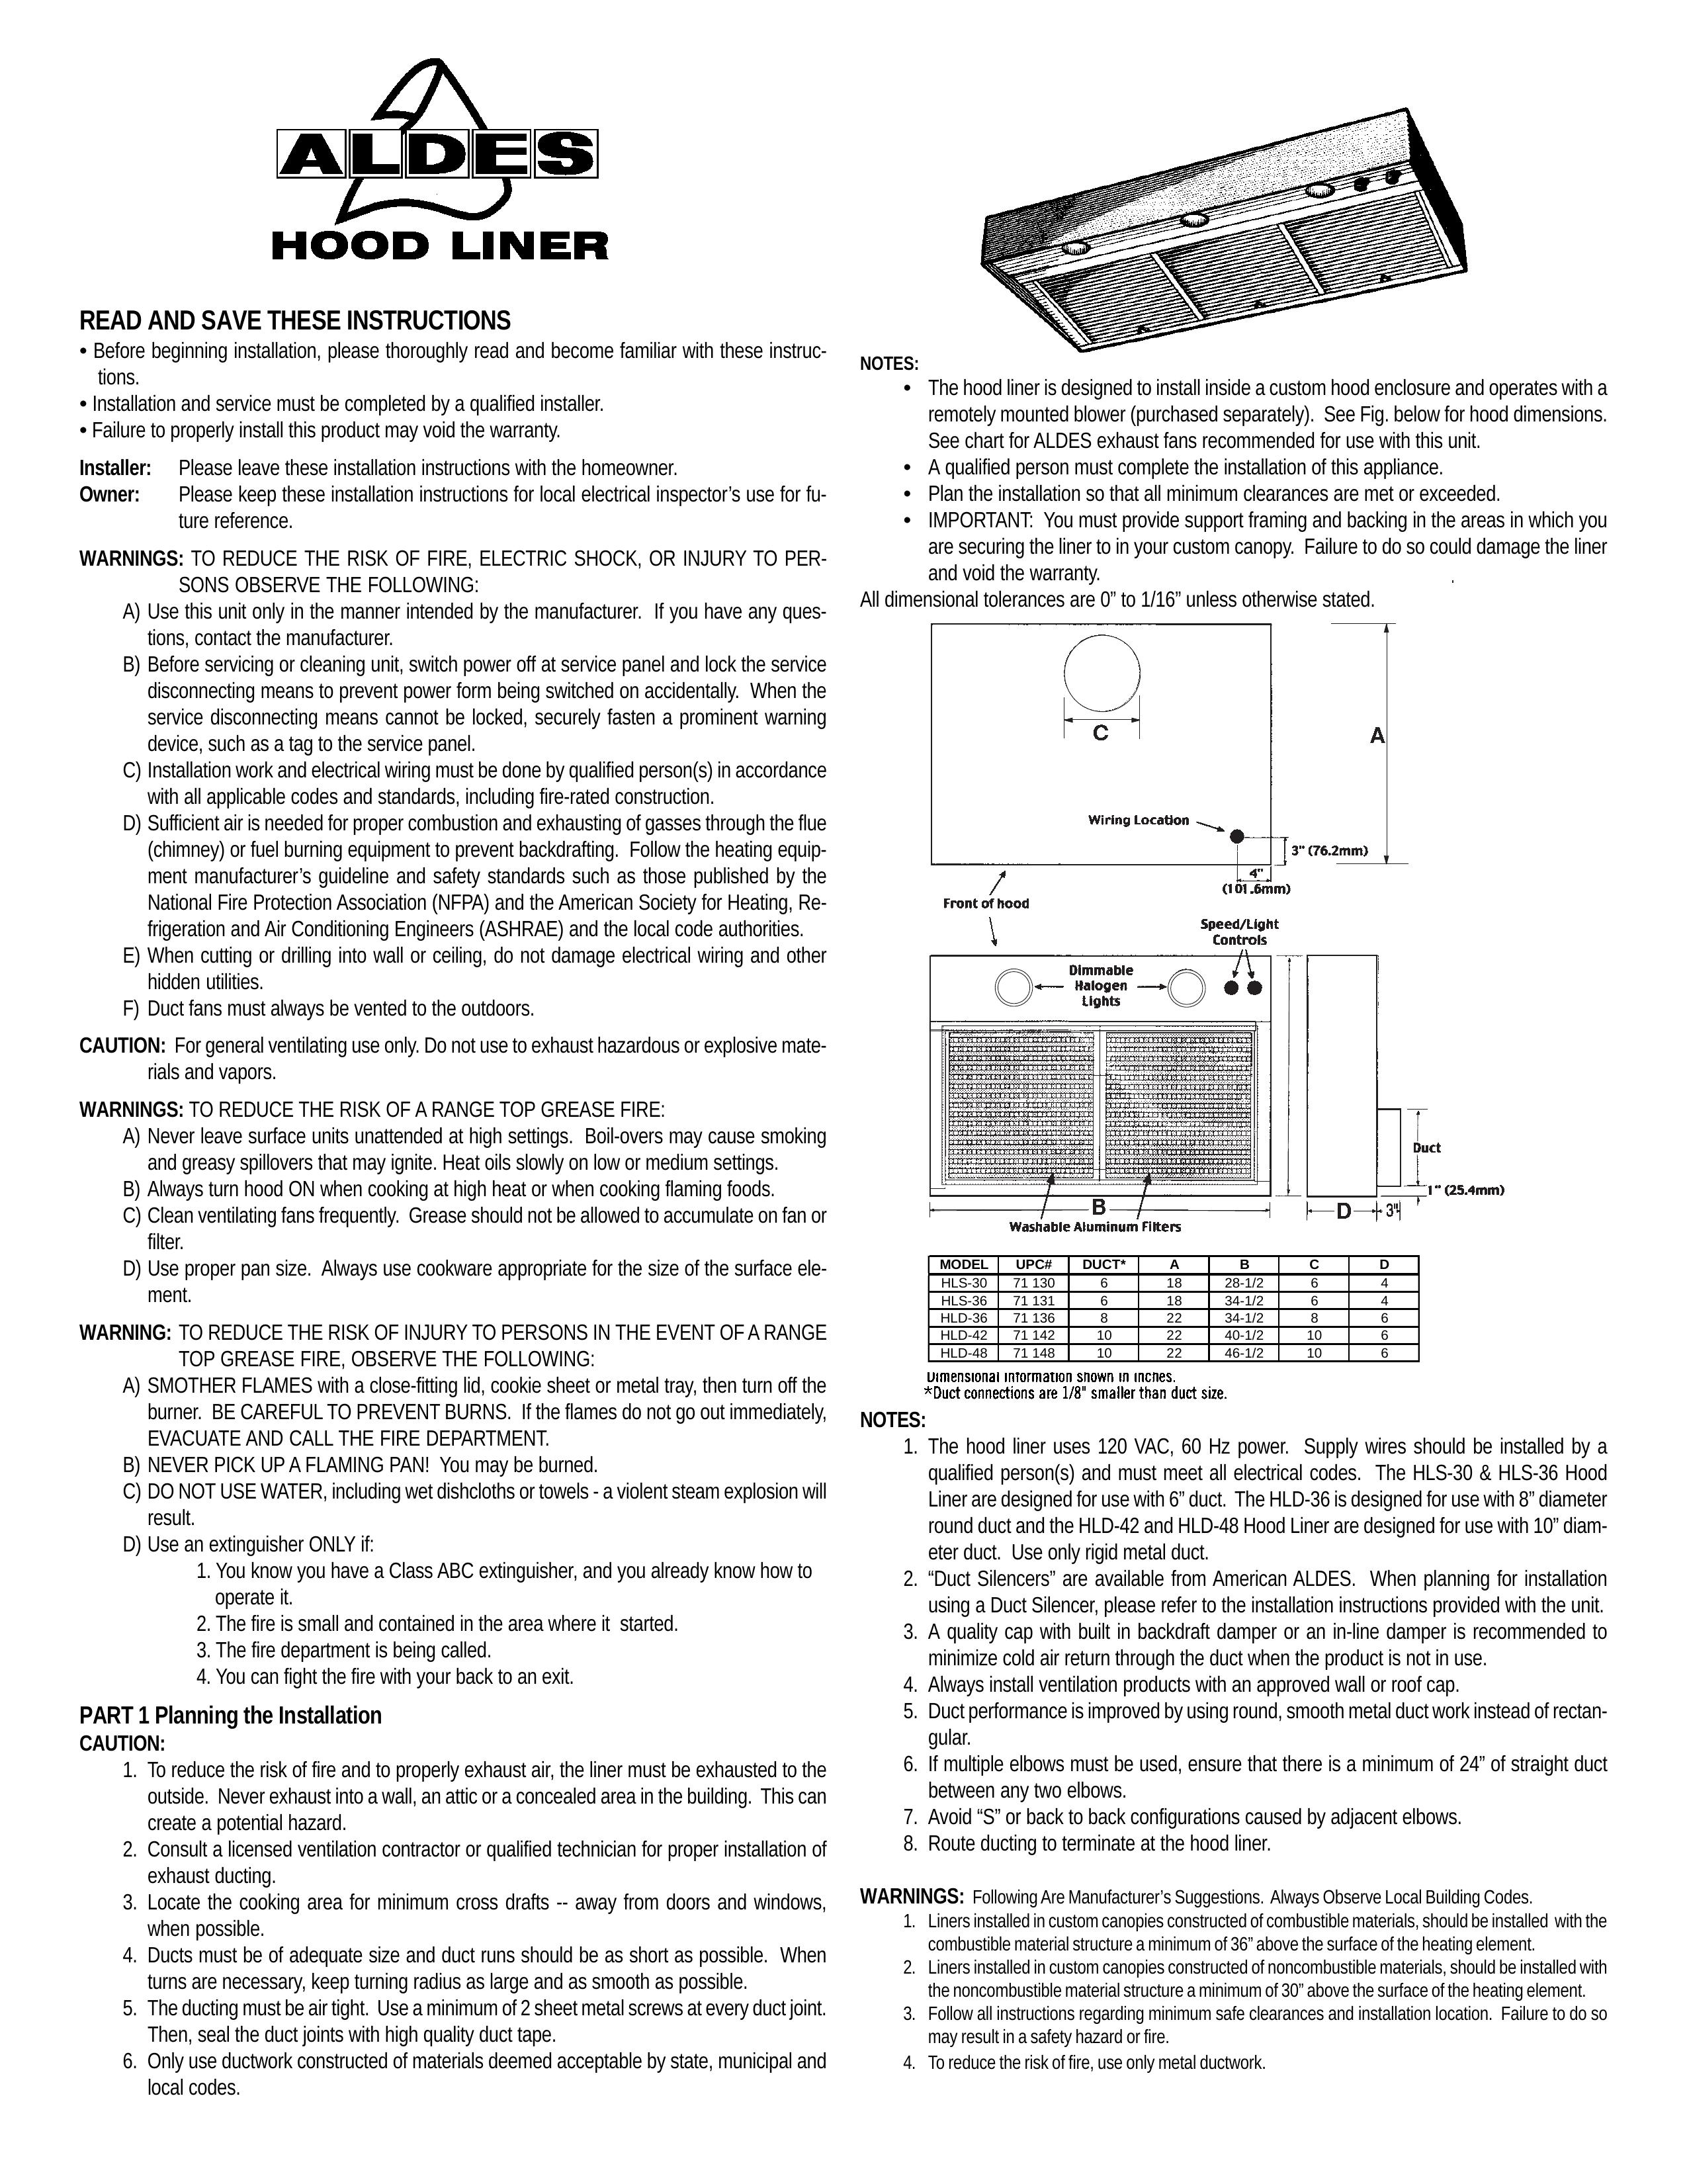 American Aldes Hood Liner Ventilation Hood User Manual